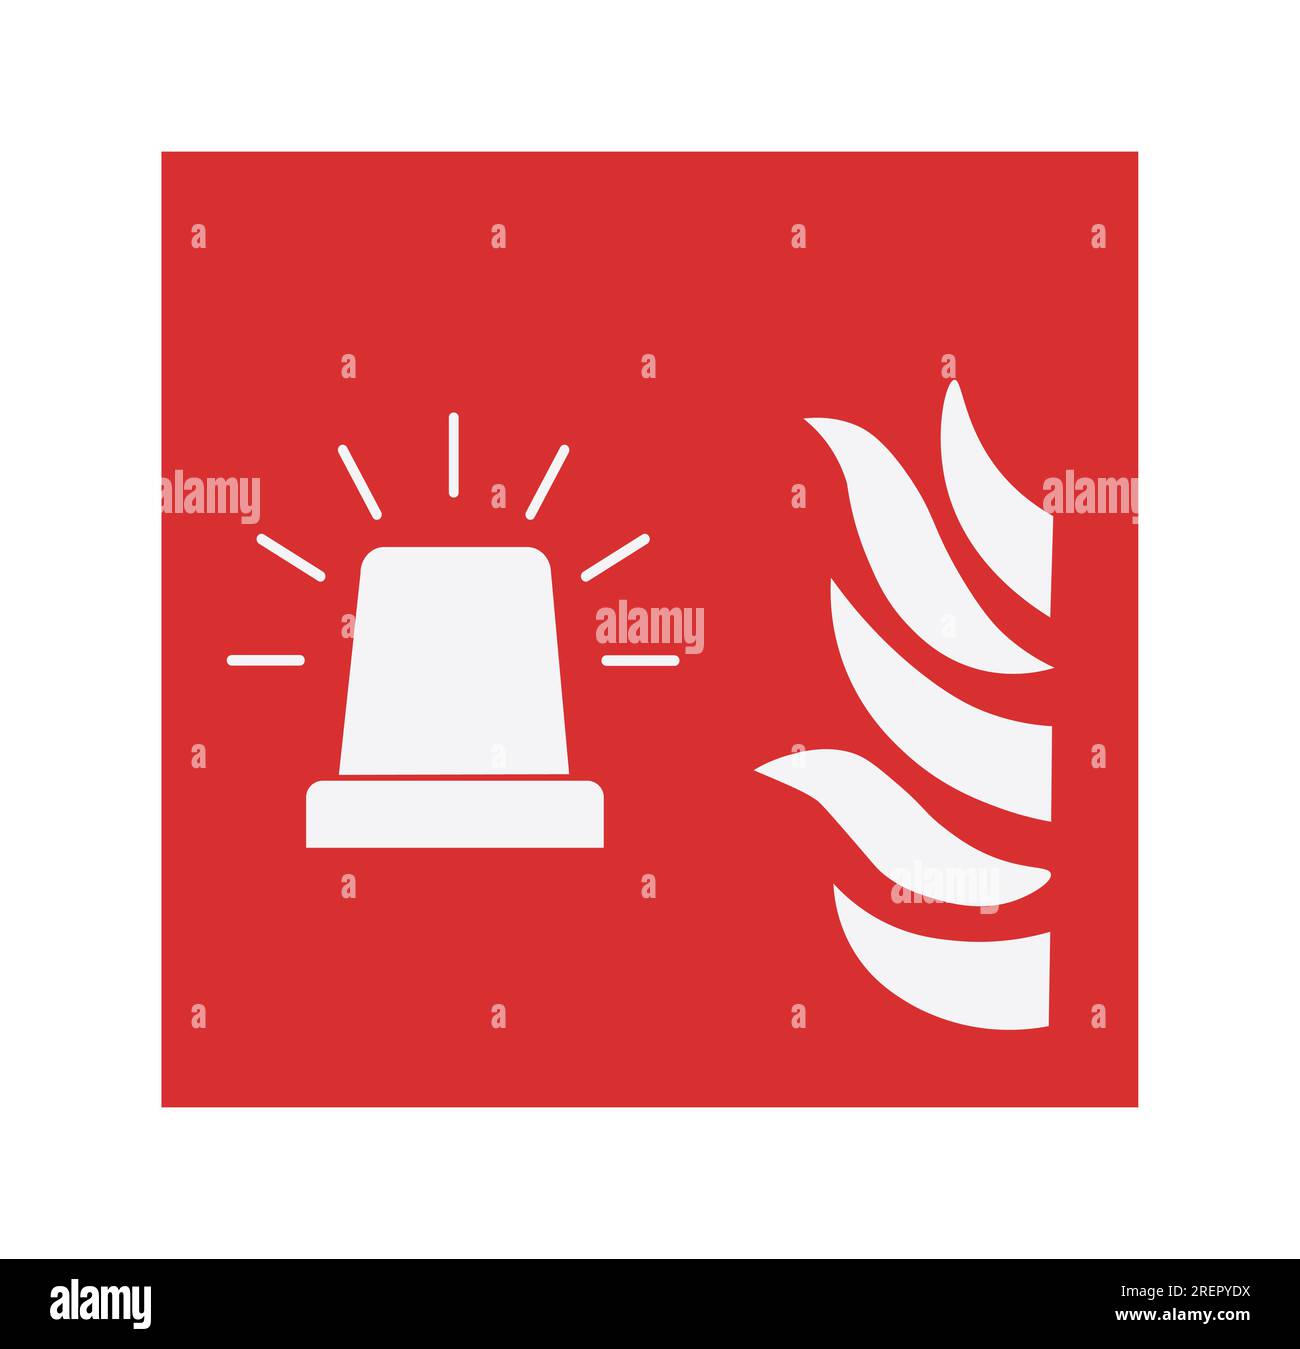 Fire Alarm Flashing Light Symbol. Vector illustration Stock Vector